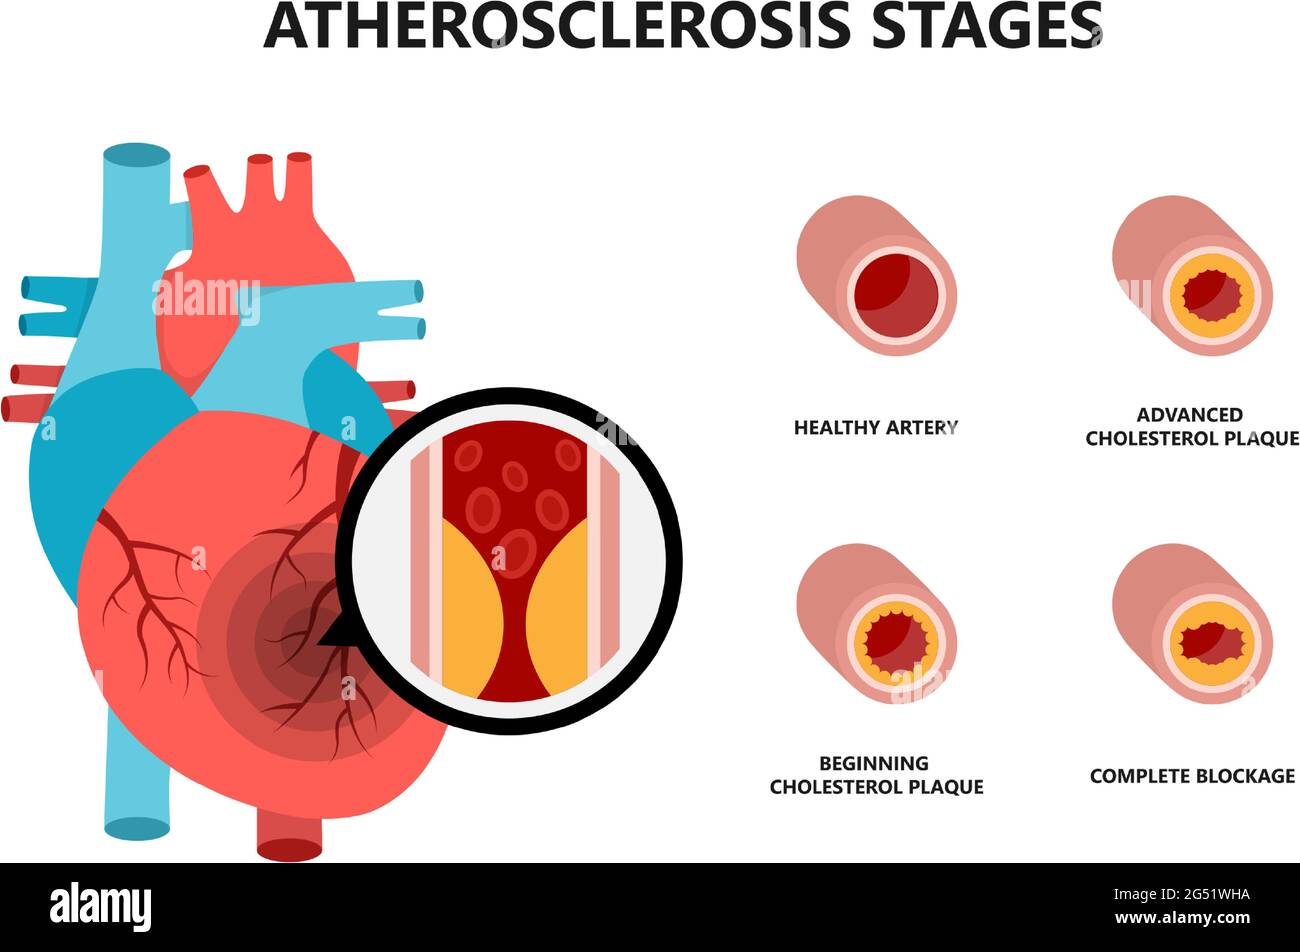 Anatomie des menschlichen Herzens mit atherosklerotischer Plaque. Cholesterinplaque in den Blutgefäßen. Stock Vektor